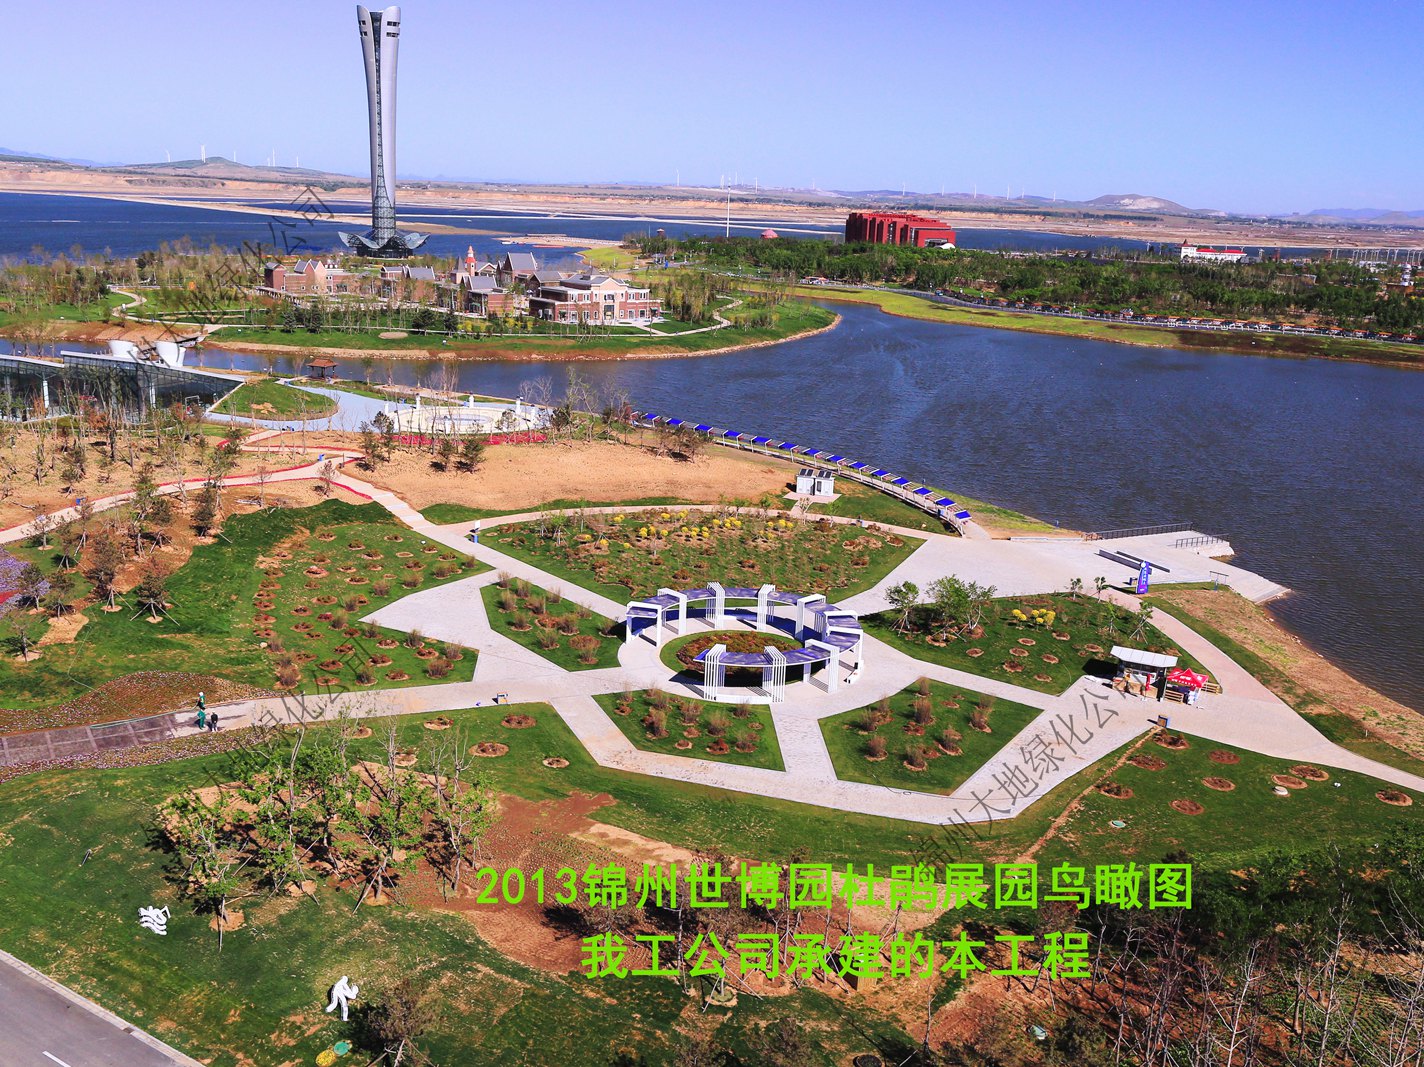 2013錦州世博園景觀工程建設杜鵑展園